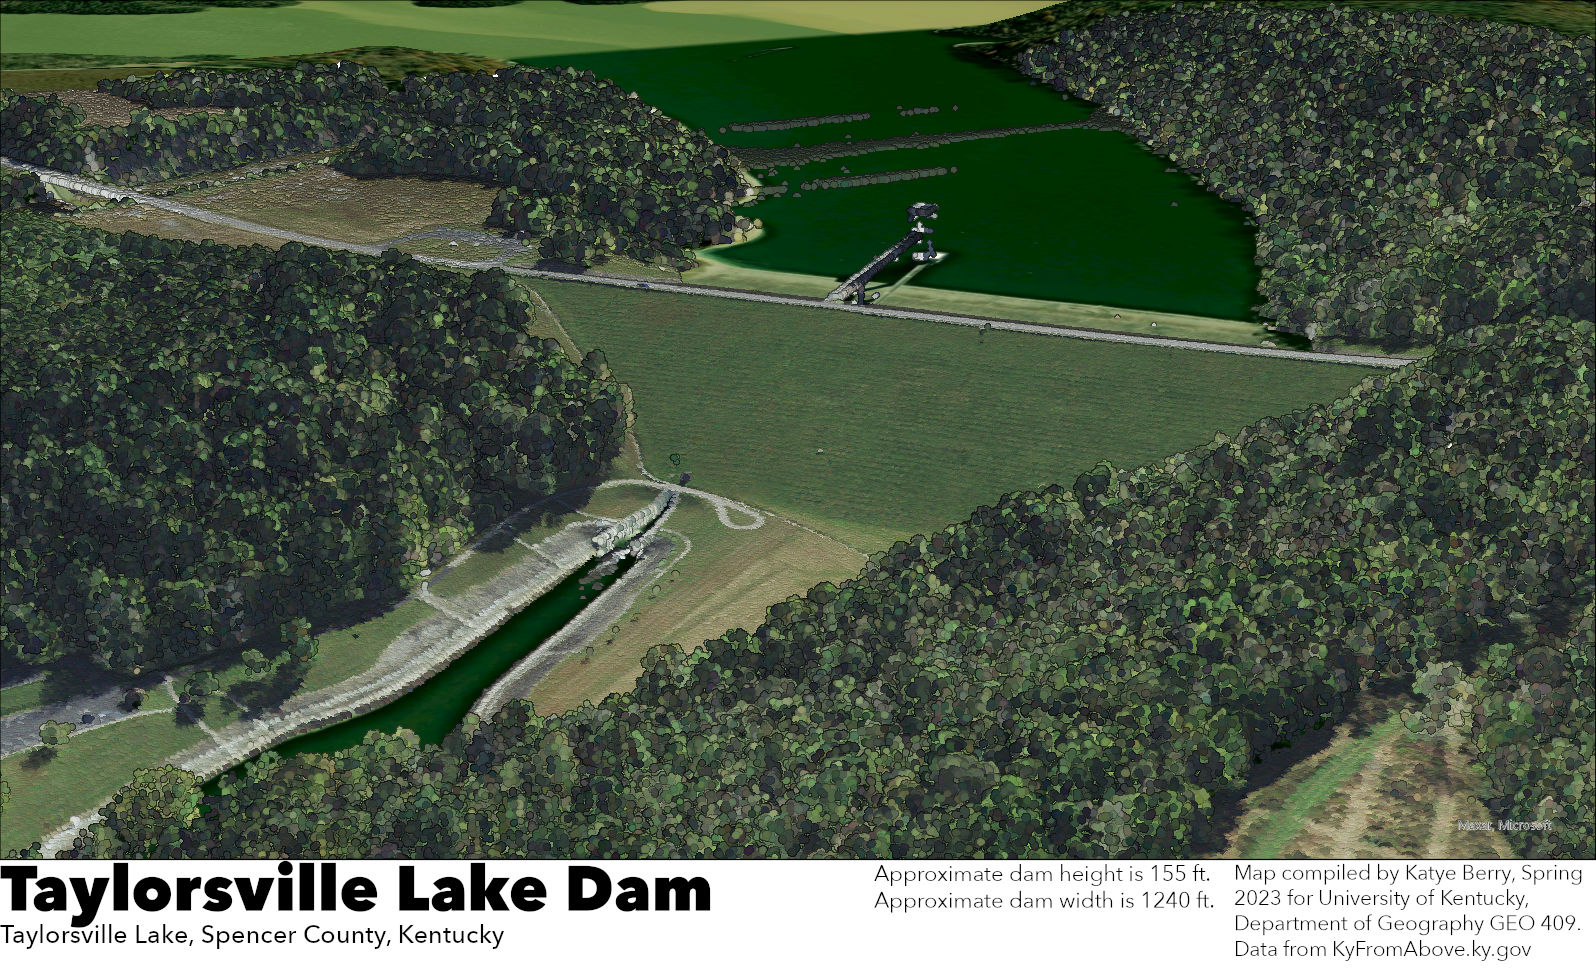 Taylorsville Lake Dam